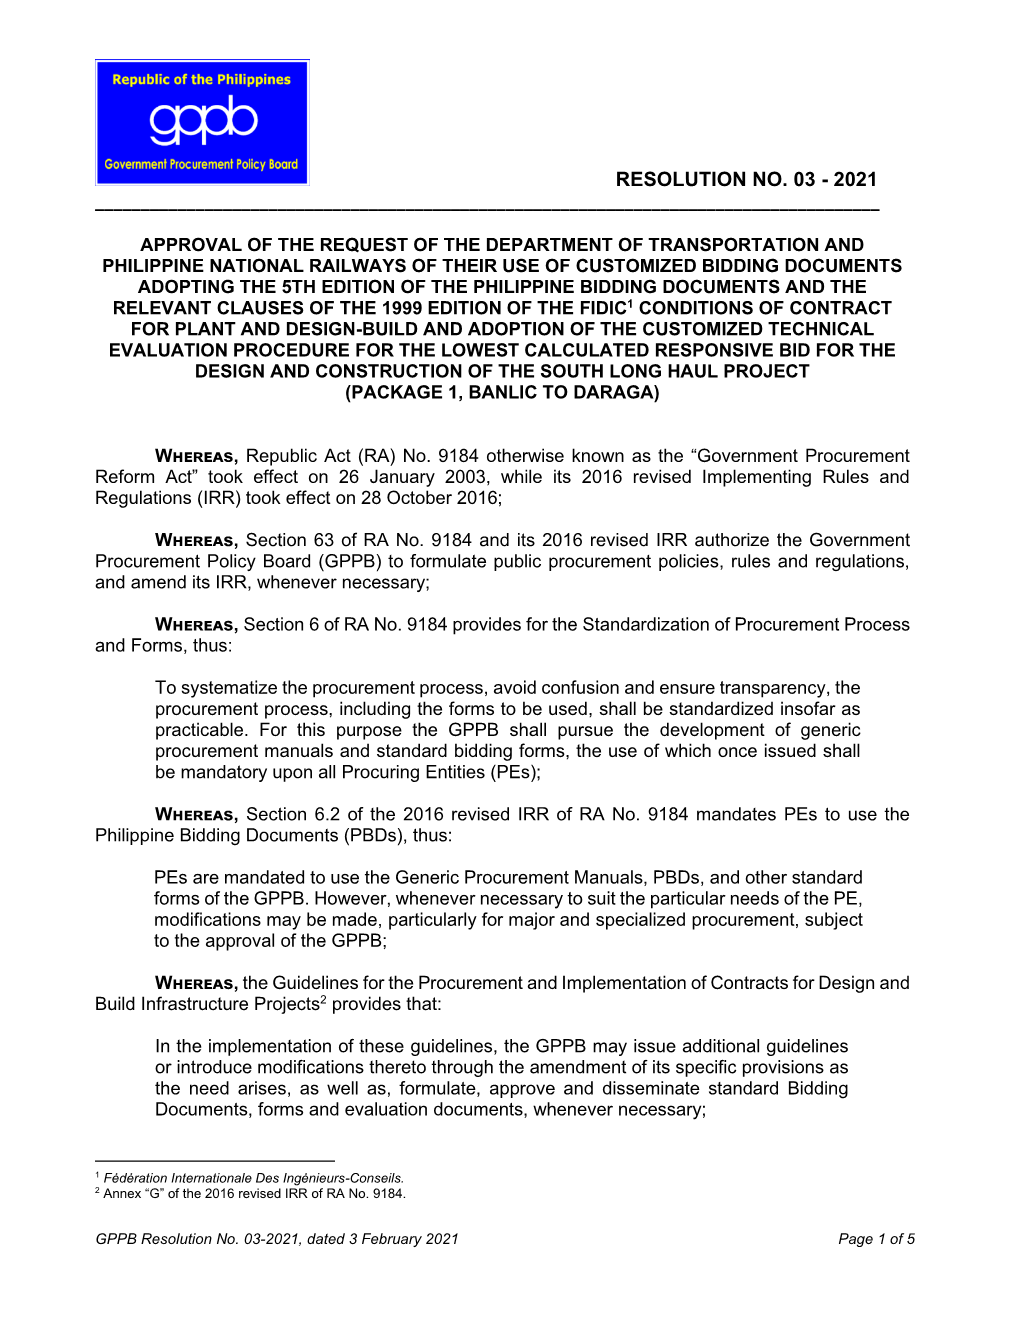 GPPB Resolution No. 03-2021